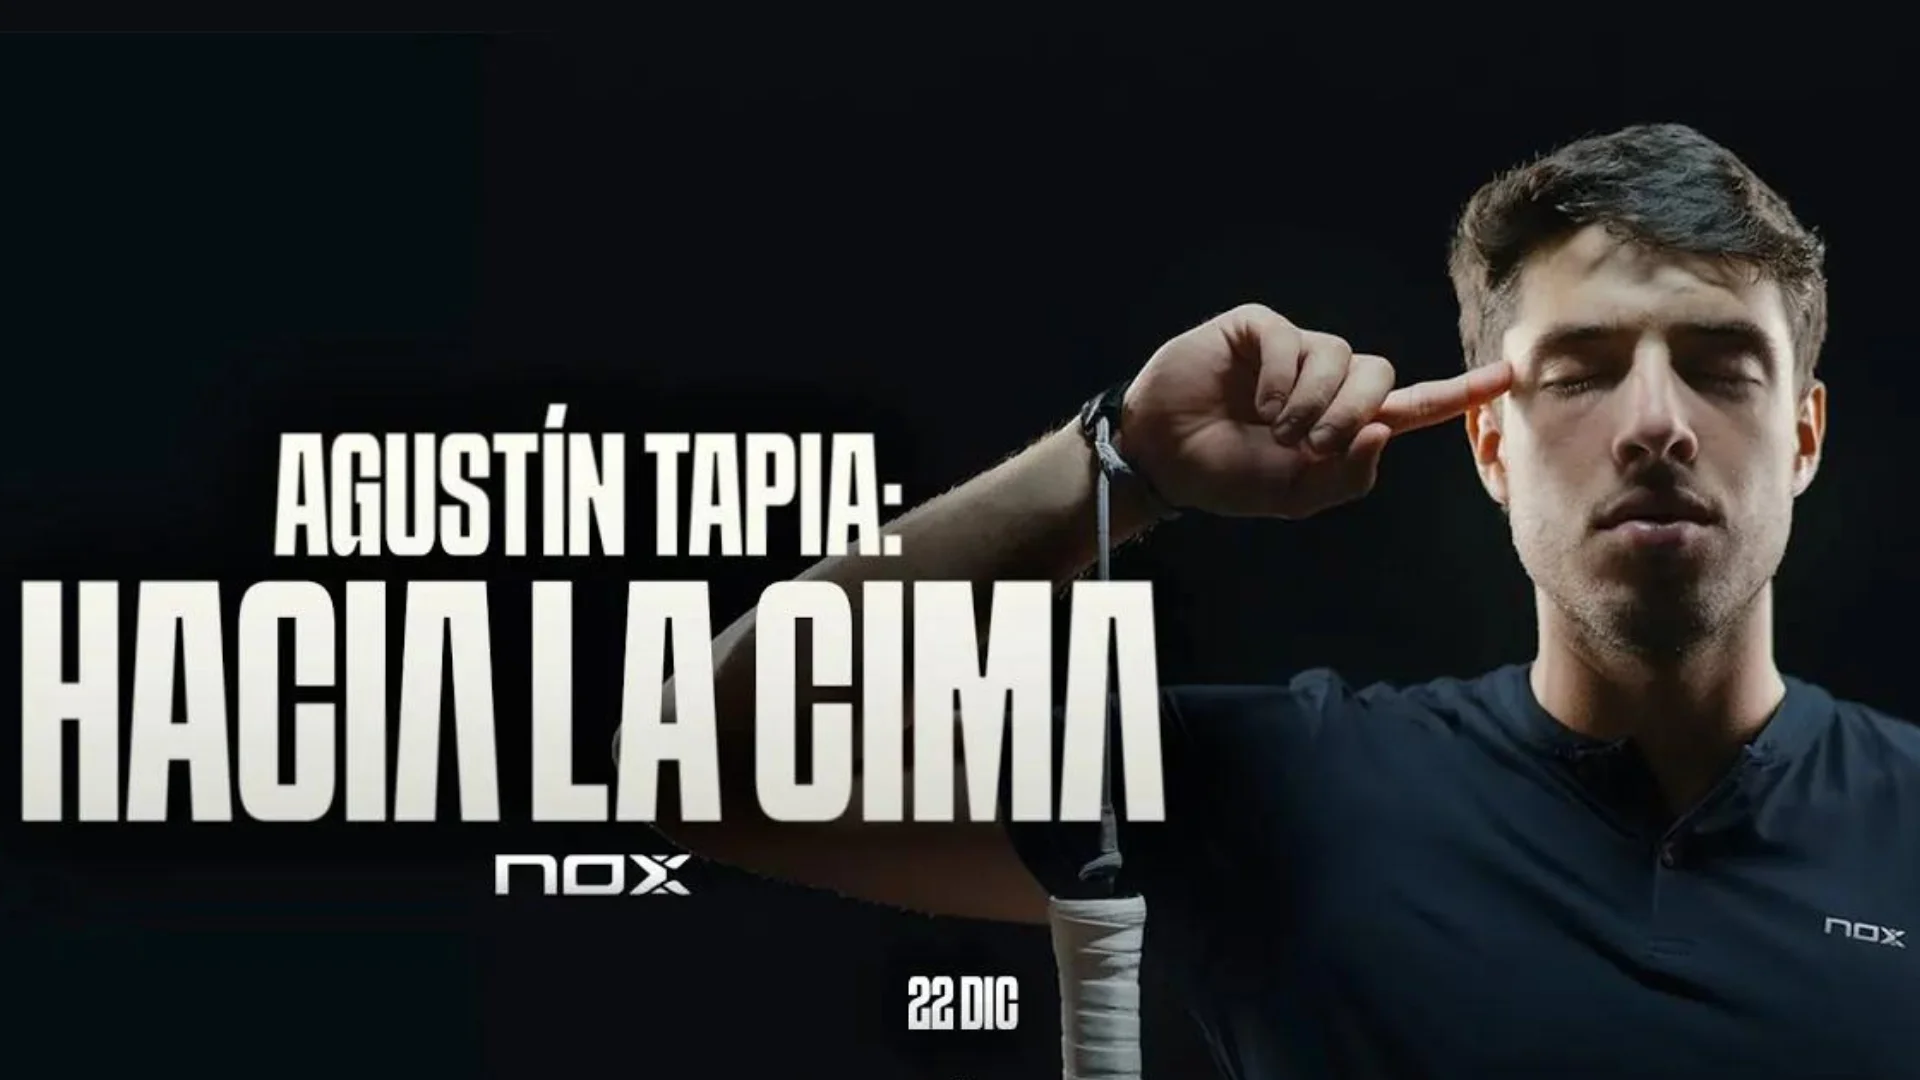 Soon a documentary on Agustin Tapia!